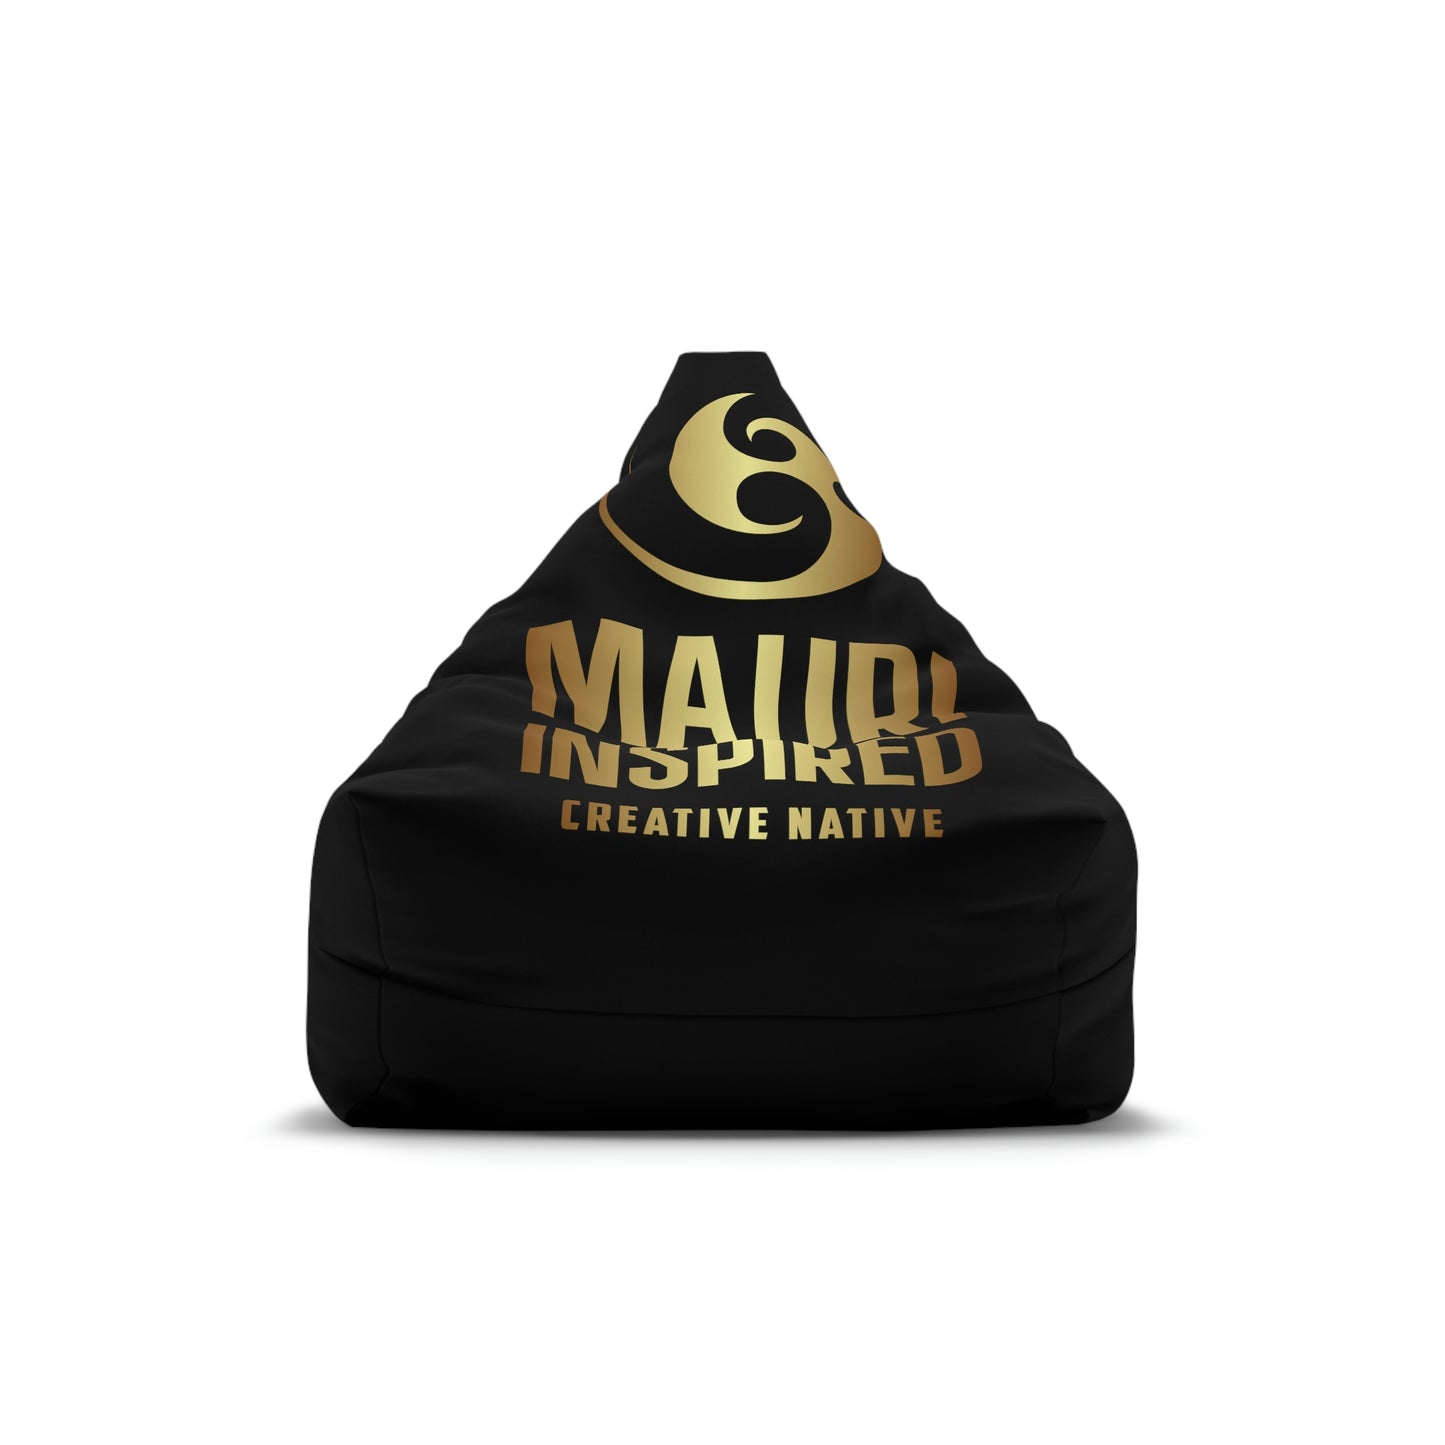 Mauri Inspired - Bean Bag Chair Cover